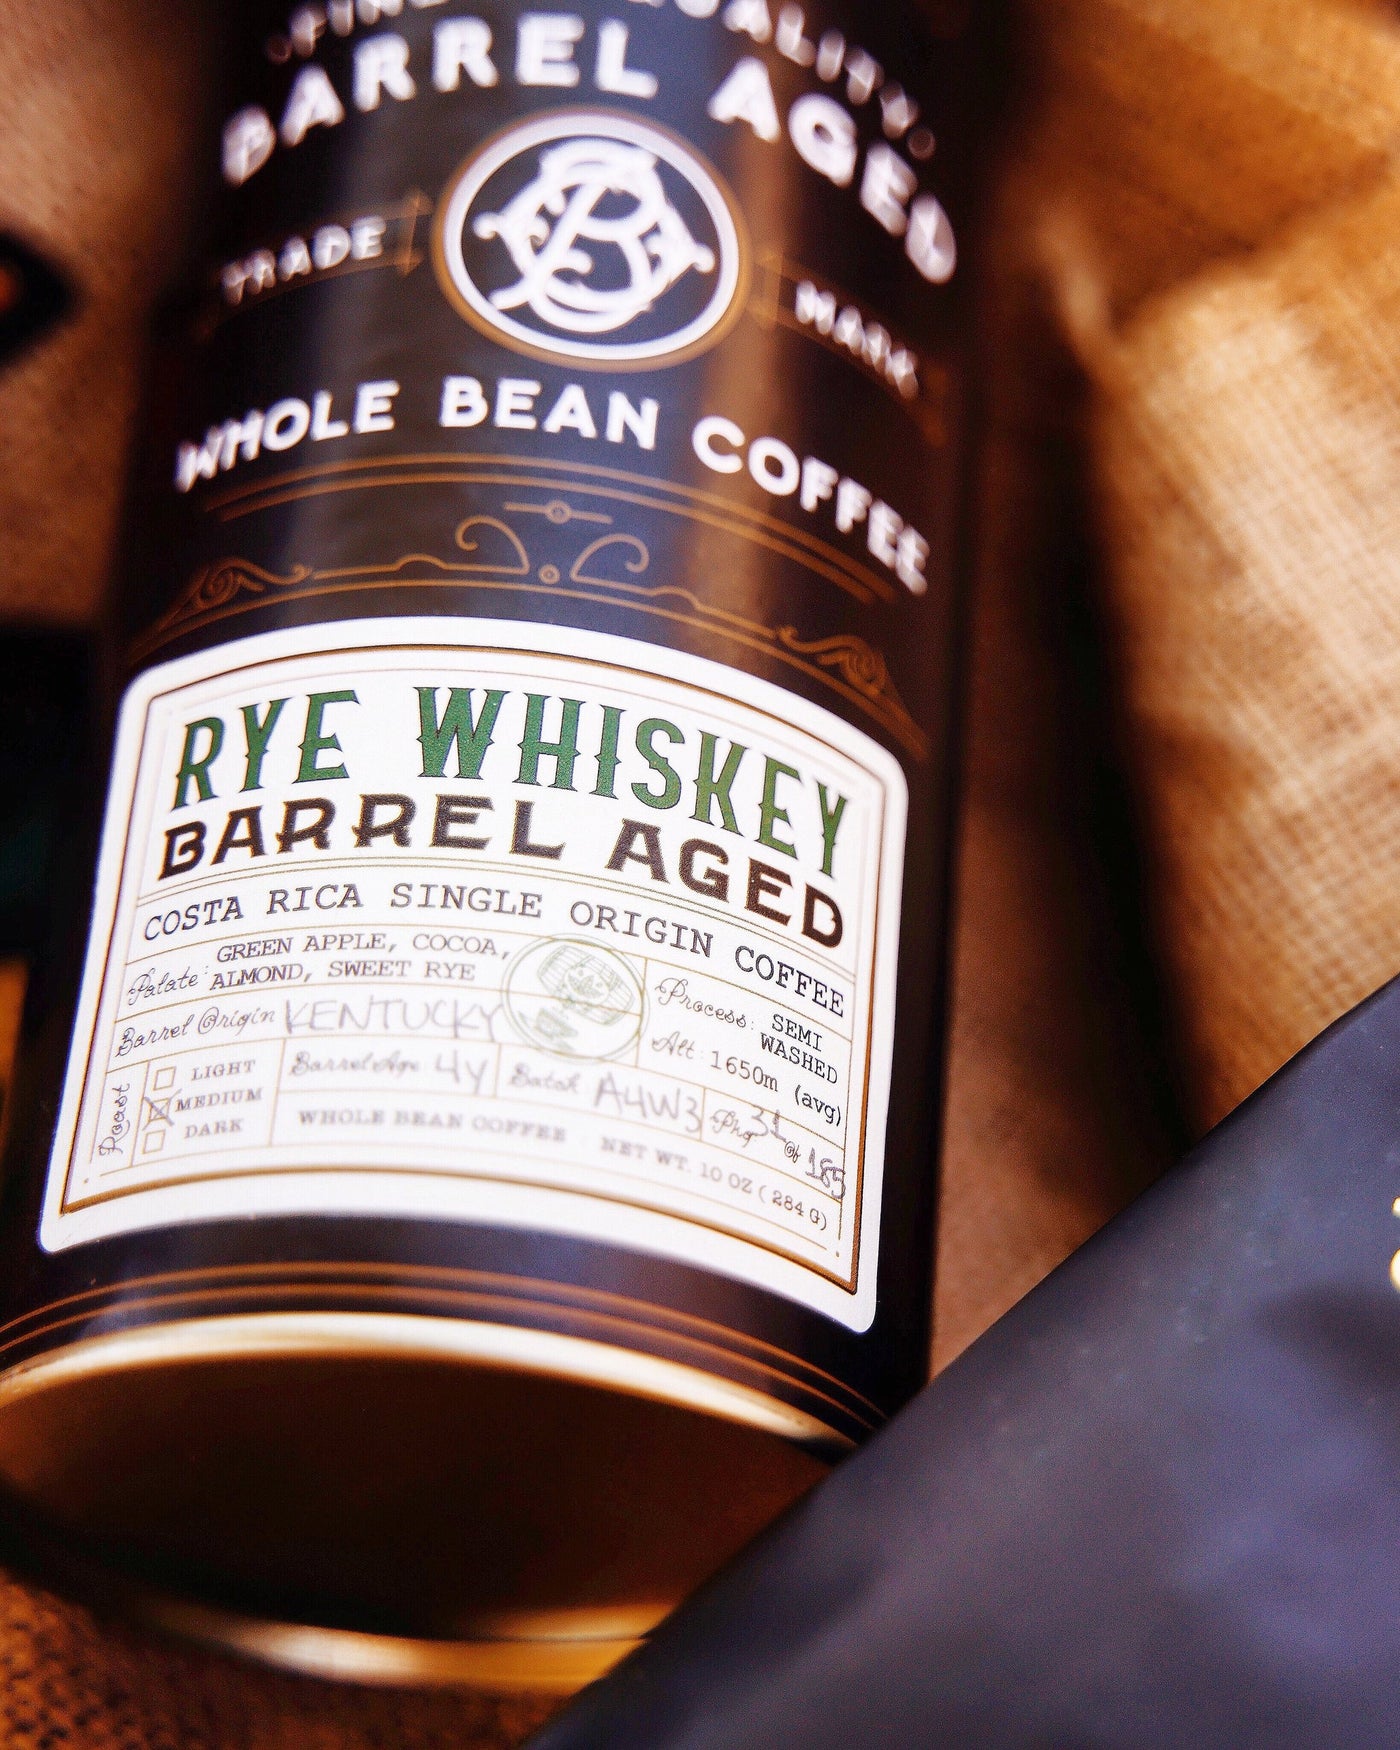 Rye Whiskey Barrel Aged Coffee